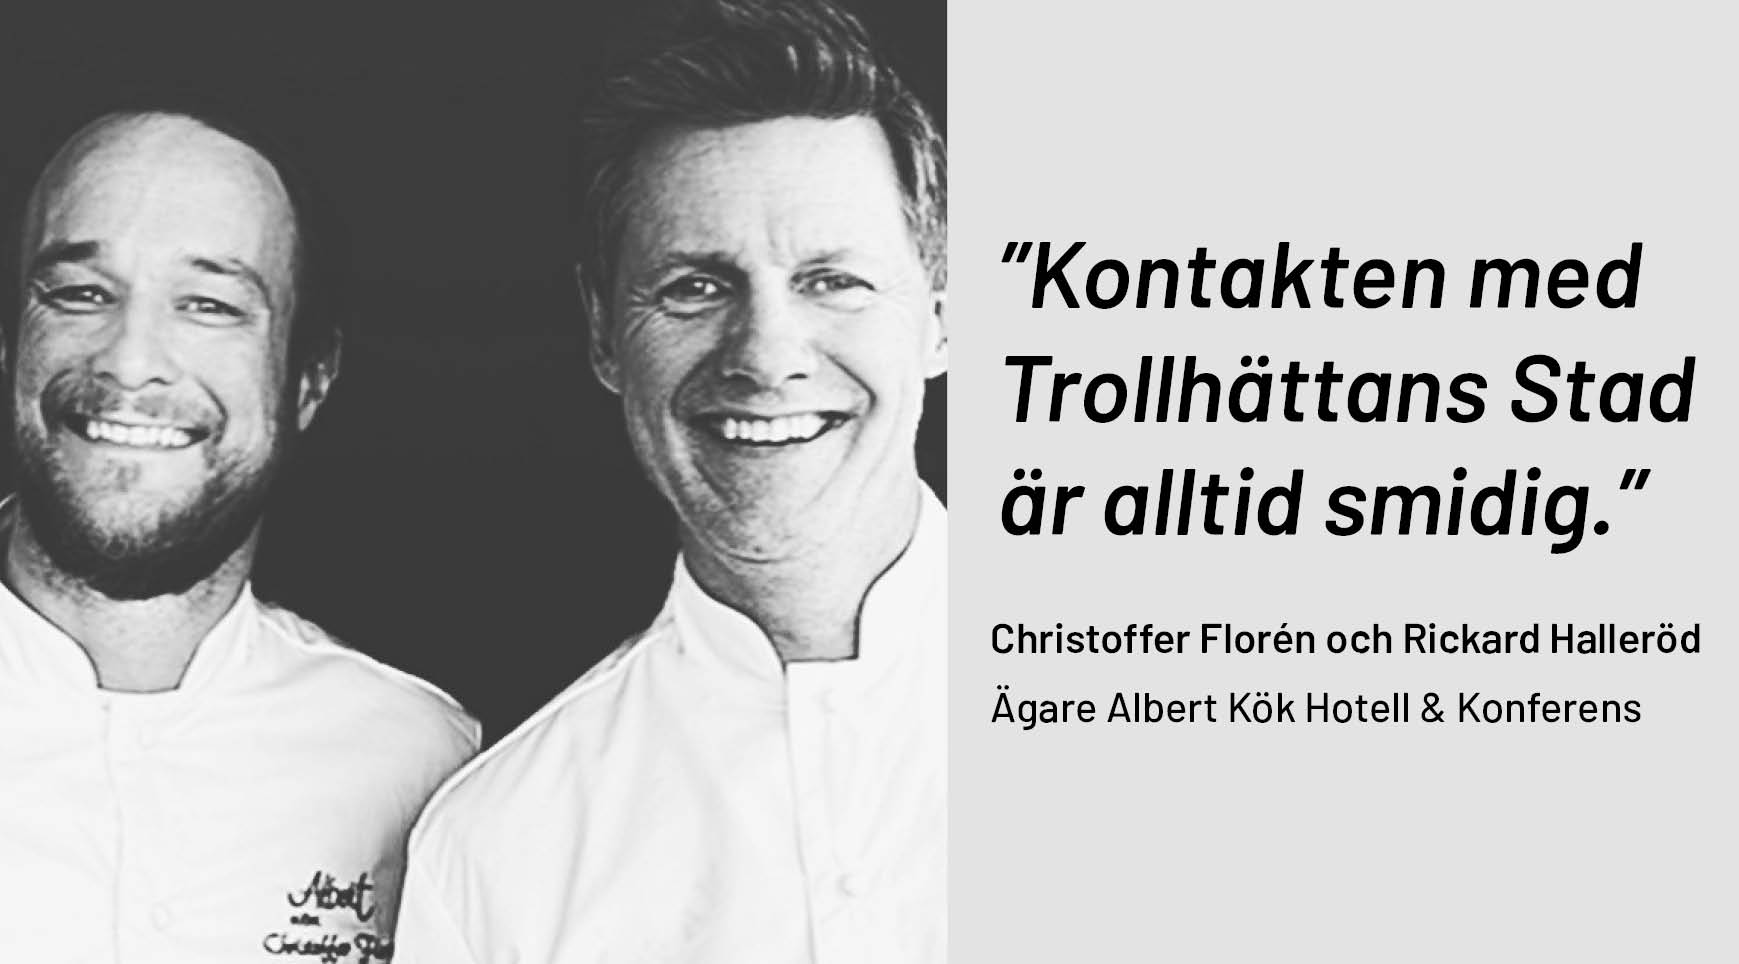 Bild på Christoffer Florén och Rickard Halleröd, citat "Kontakten med Trollhättans Stad är alltid smidig"